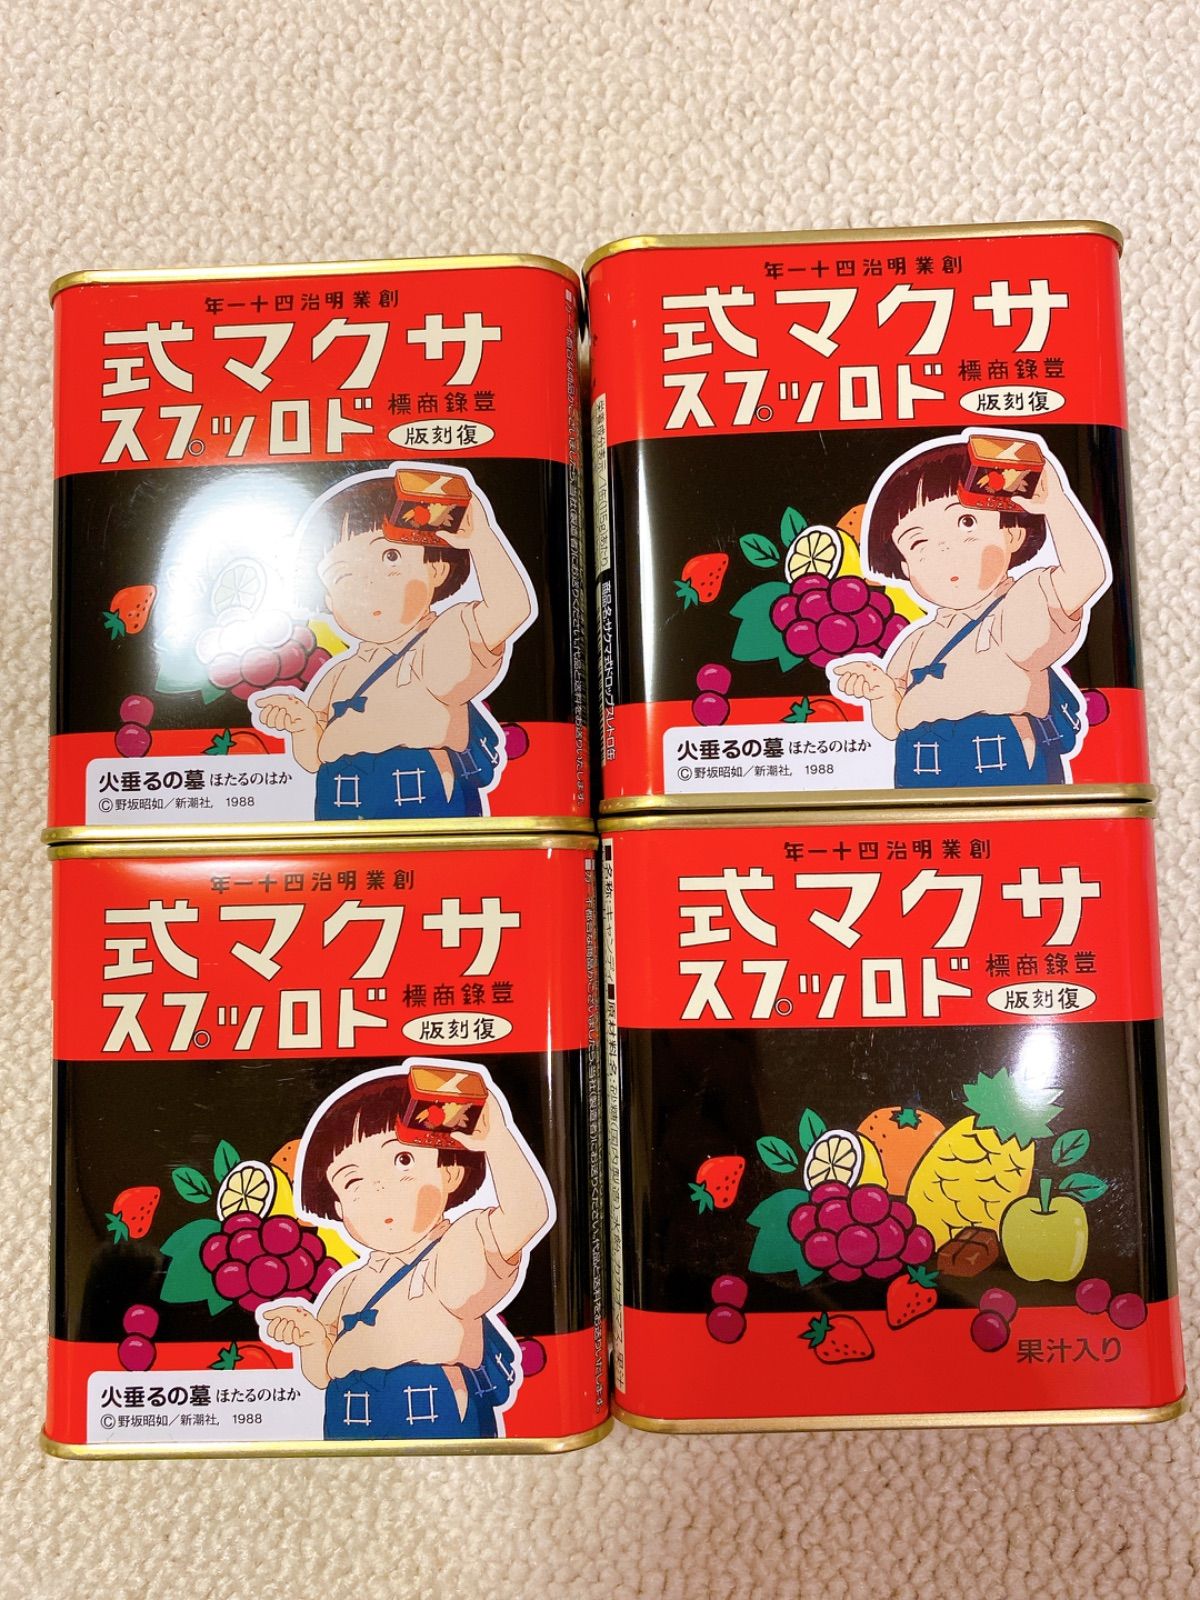 新品未開封 サクマ式ドロップス 復刻版 4缶 火垂るの墓 飴 キャンディー☆ かのんまりんショップ メルカリ